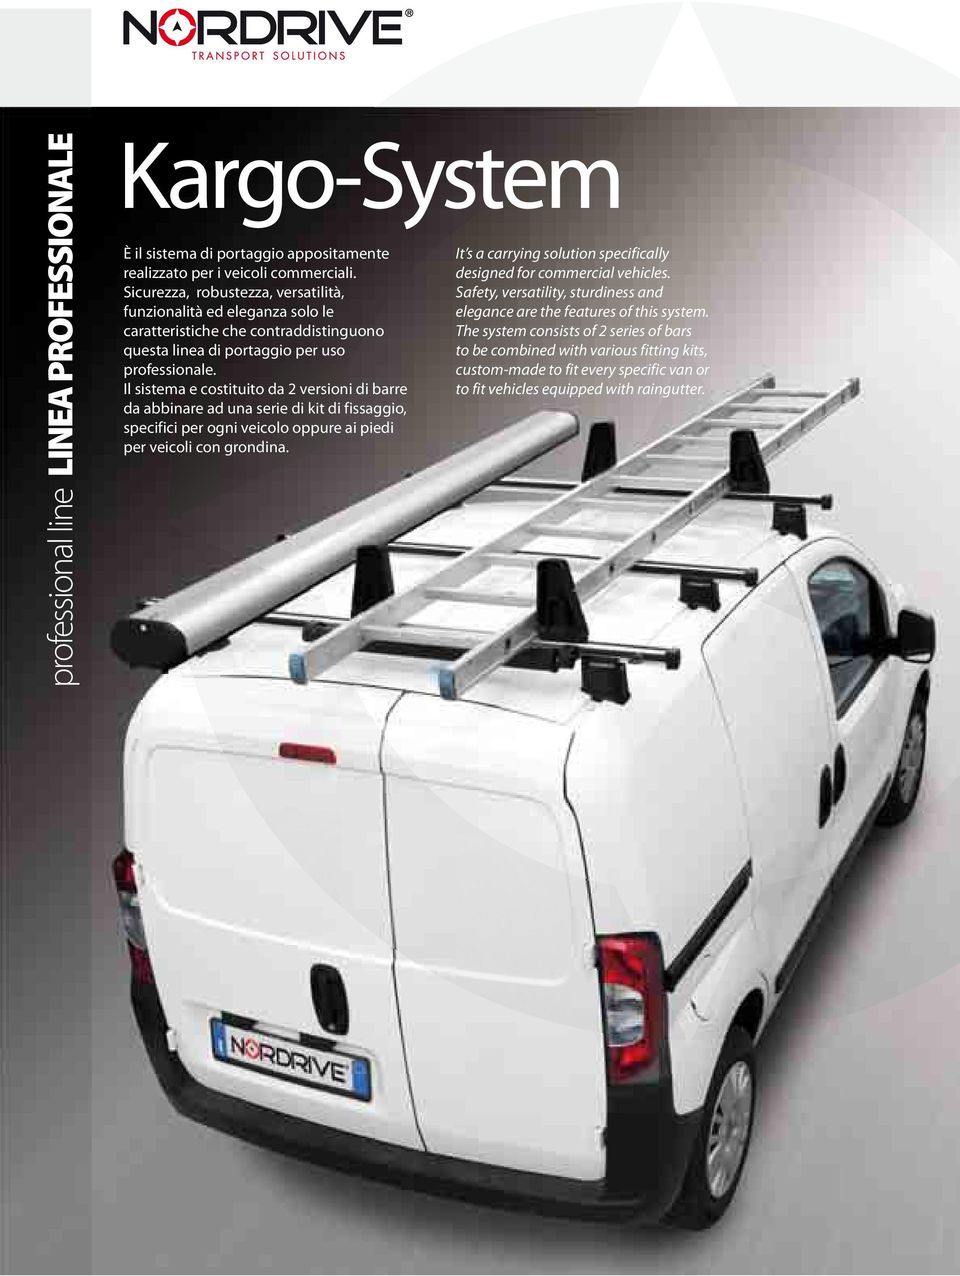 Il sistema e costituito da versioni di barre da abbinare ad una serie di kit di fissaggio, specifici per ogni veicolo oppure ai piedi per veicoli con grondina.